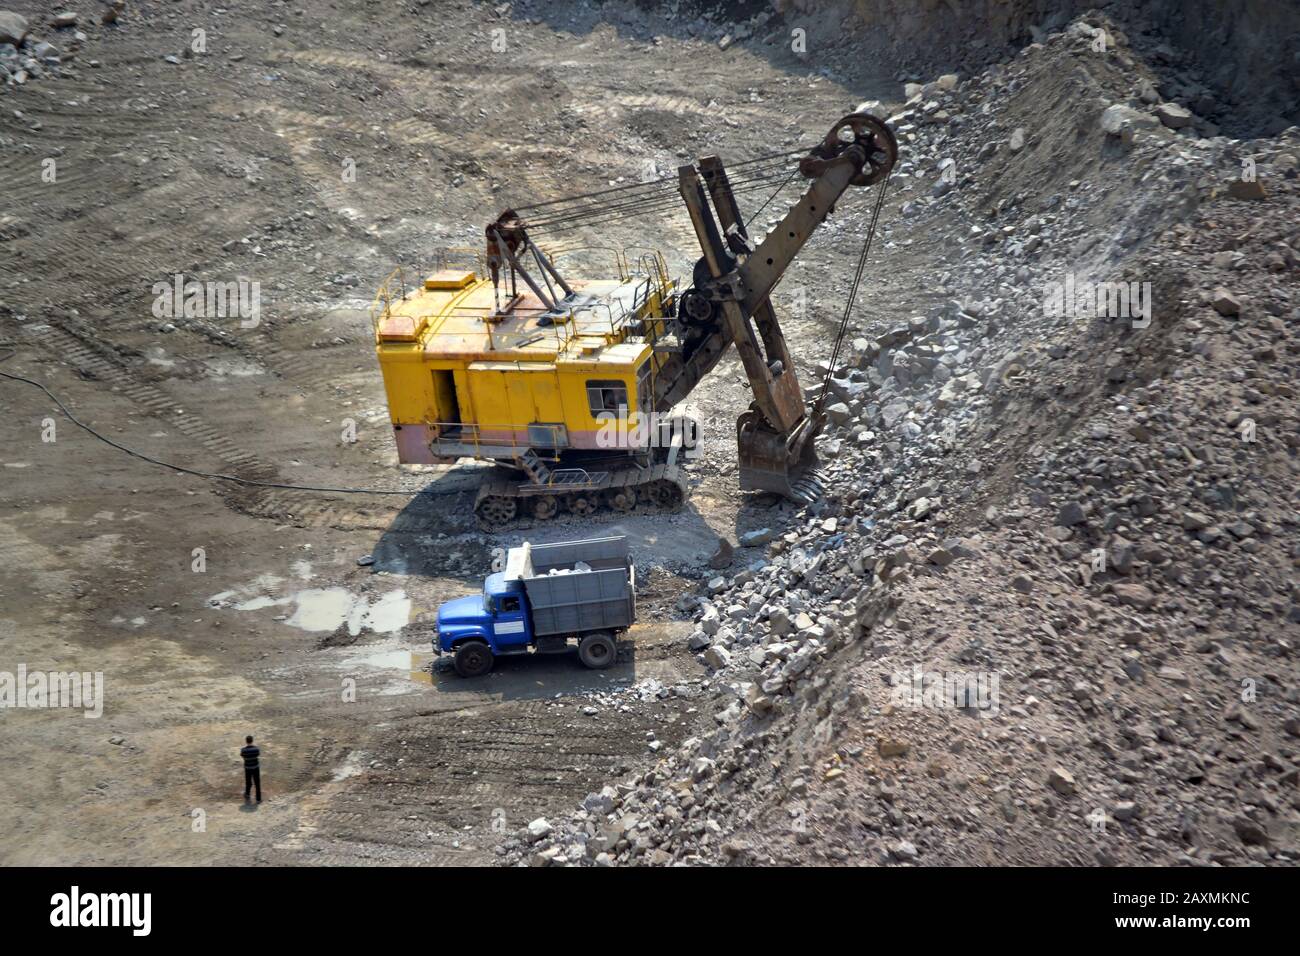 pelle hydraulique, camion et homme de grande taille se tenant à côté d'une carrière de granit Banque D'Images